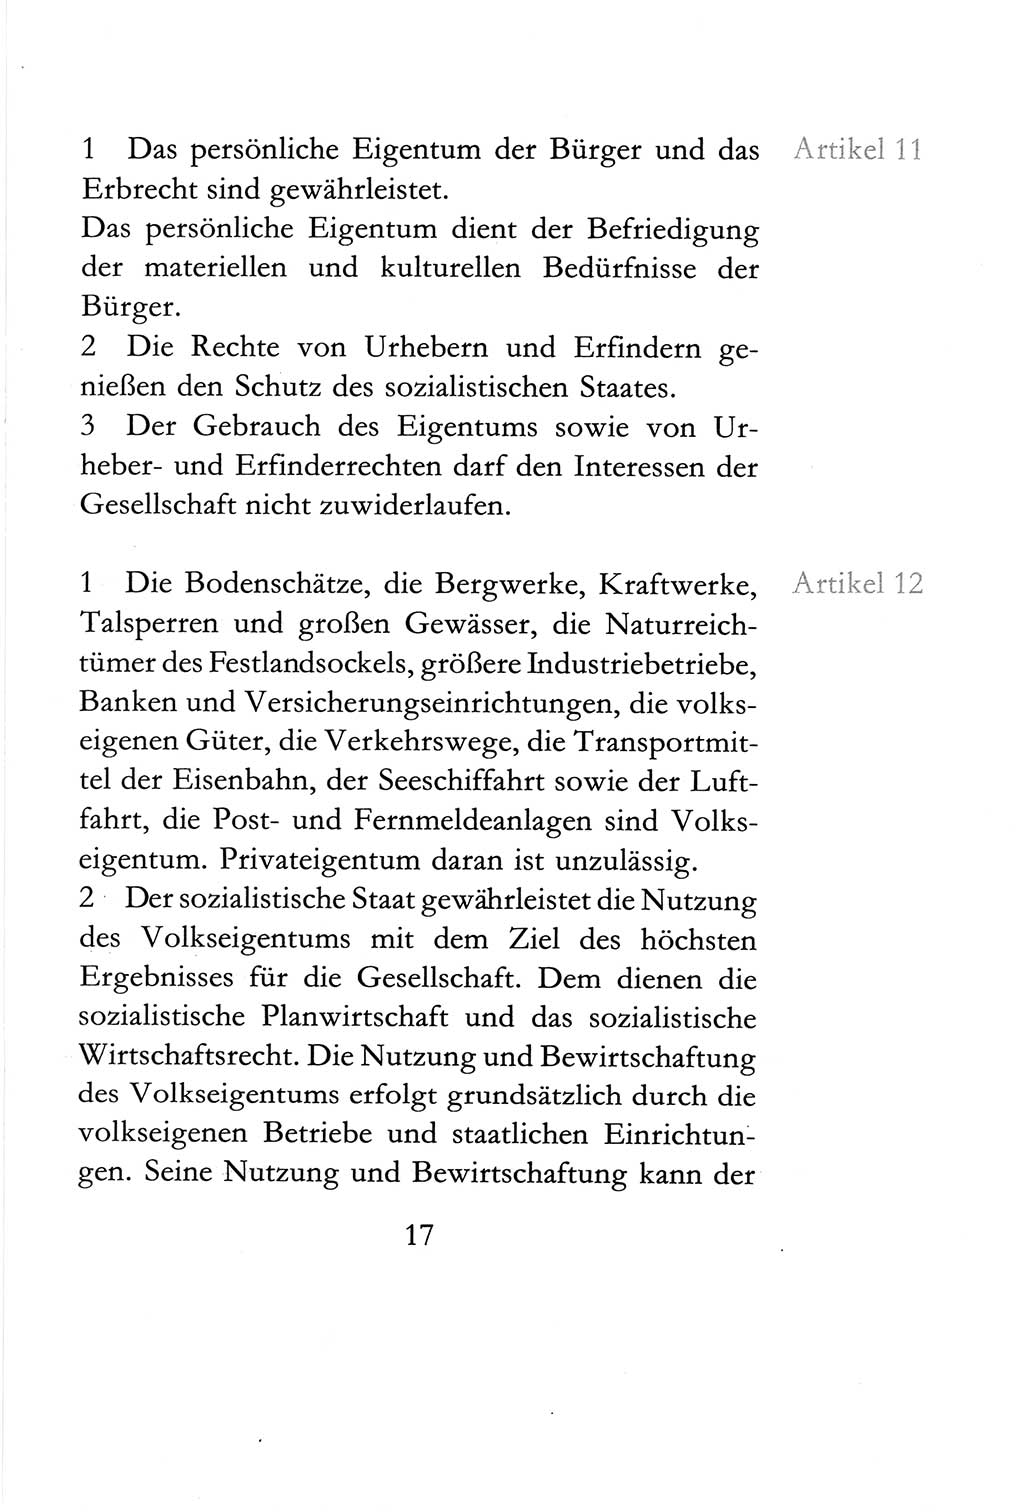 Verfassung der Deutschen Demokratischen Republik (DDR) vom 6. April 1968, Seite 17 (Verf. DDR 1968, S. 17)